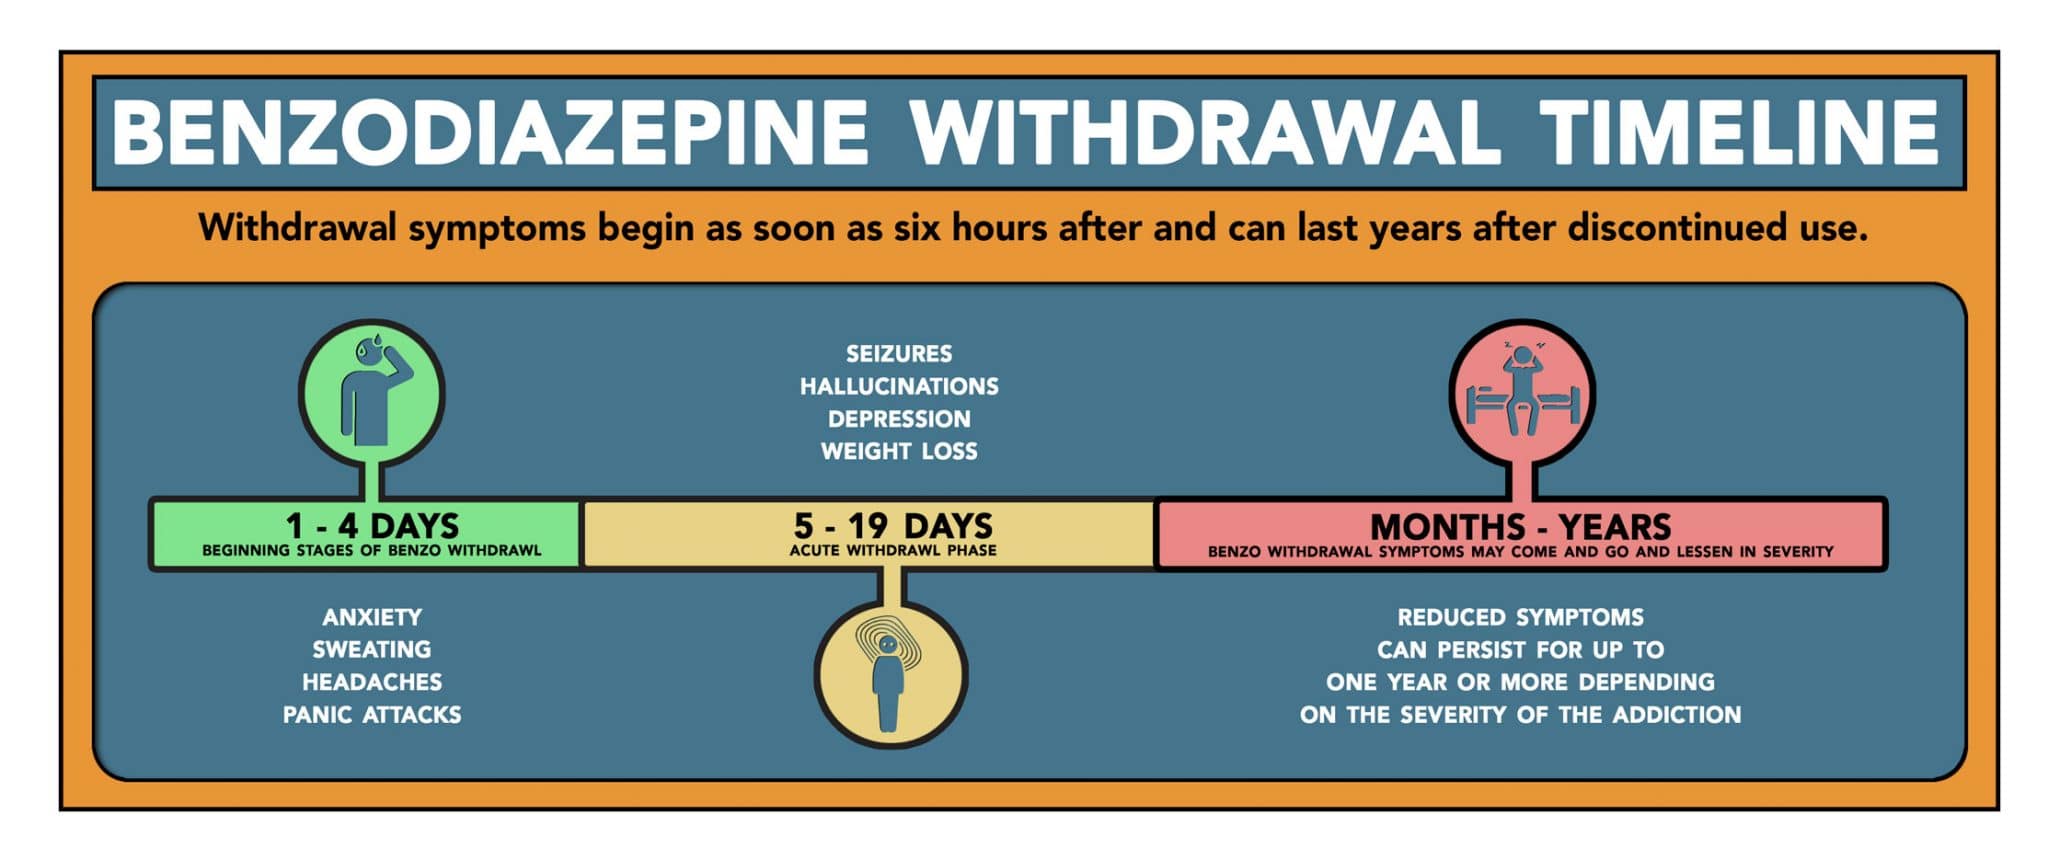 Benzodiazepinen ontwenning tijdlijn, symptomen en behandeling